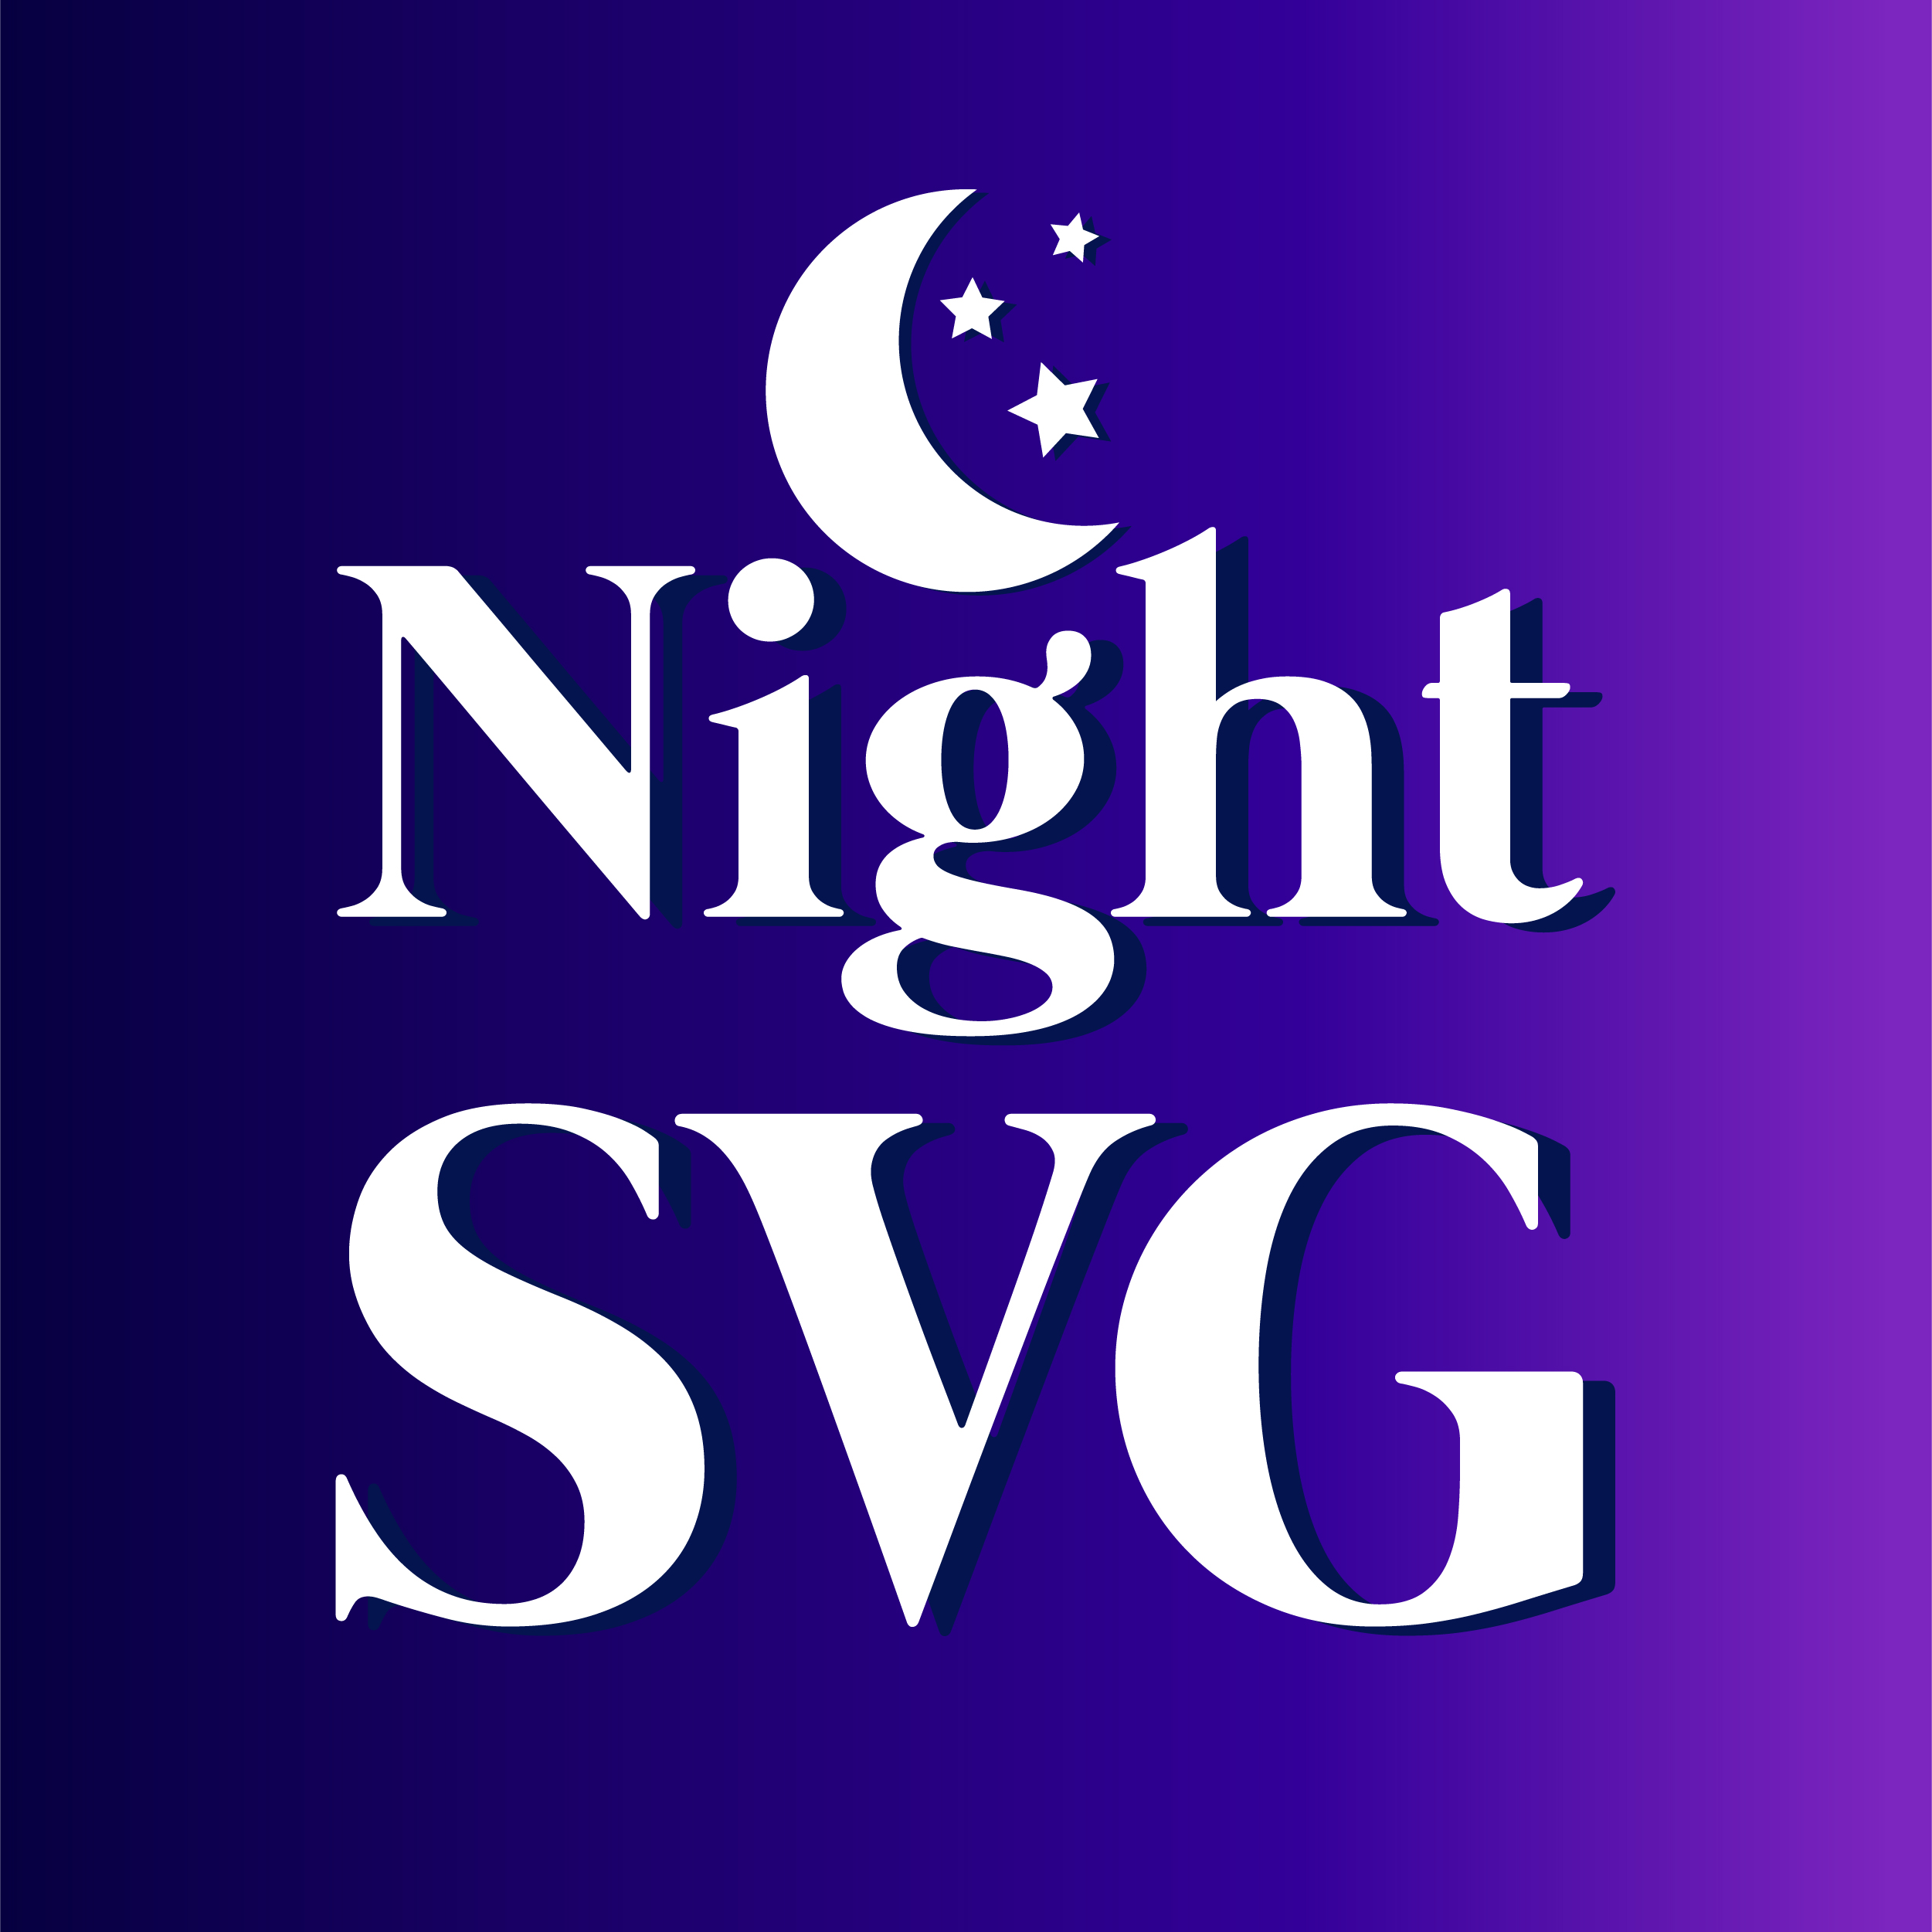 NightSVG